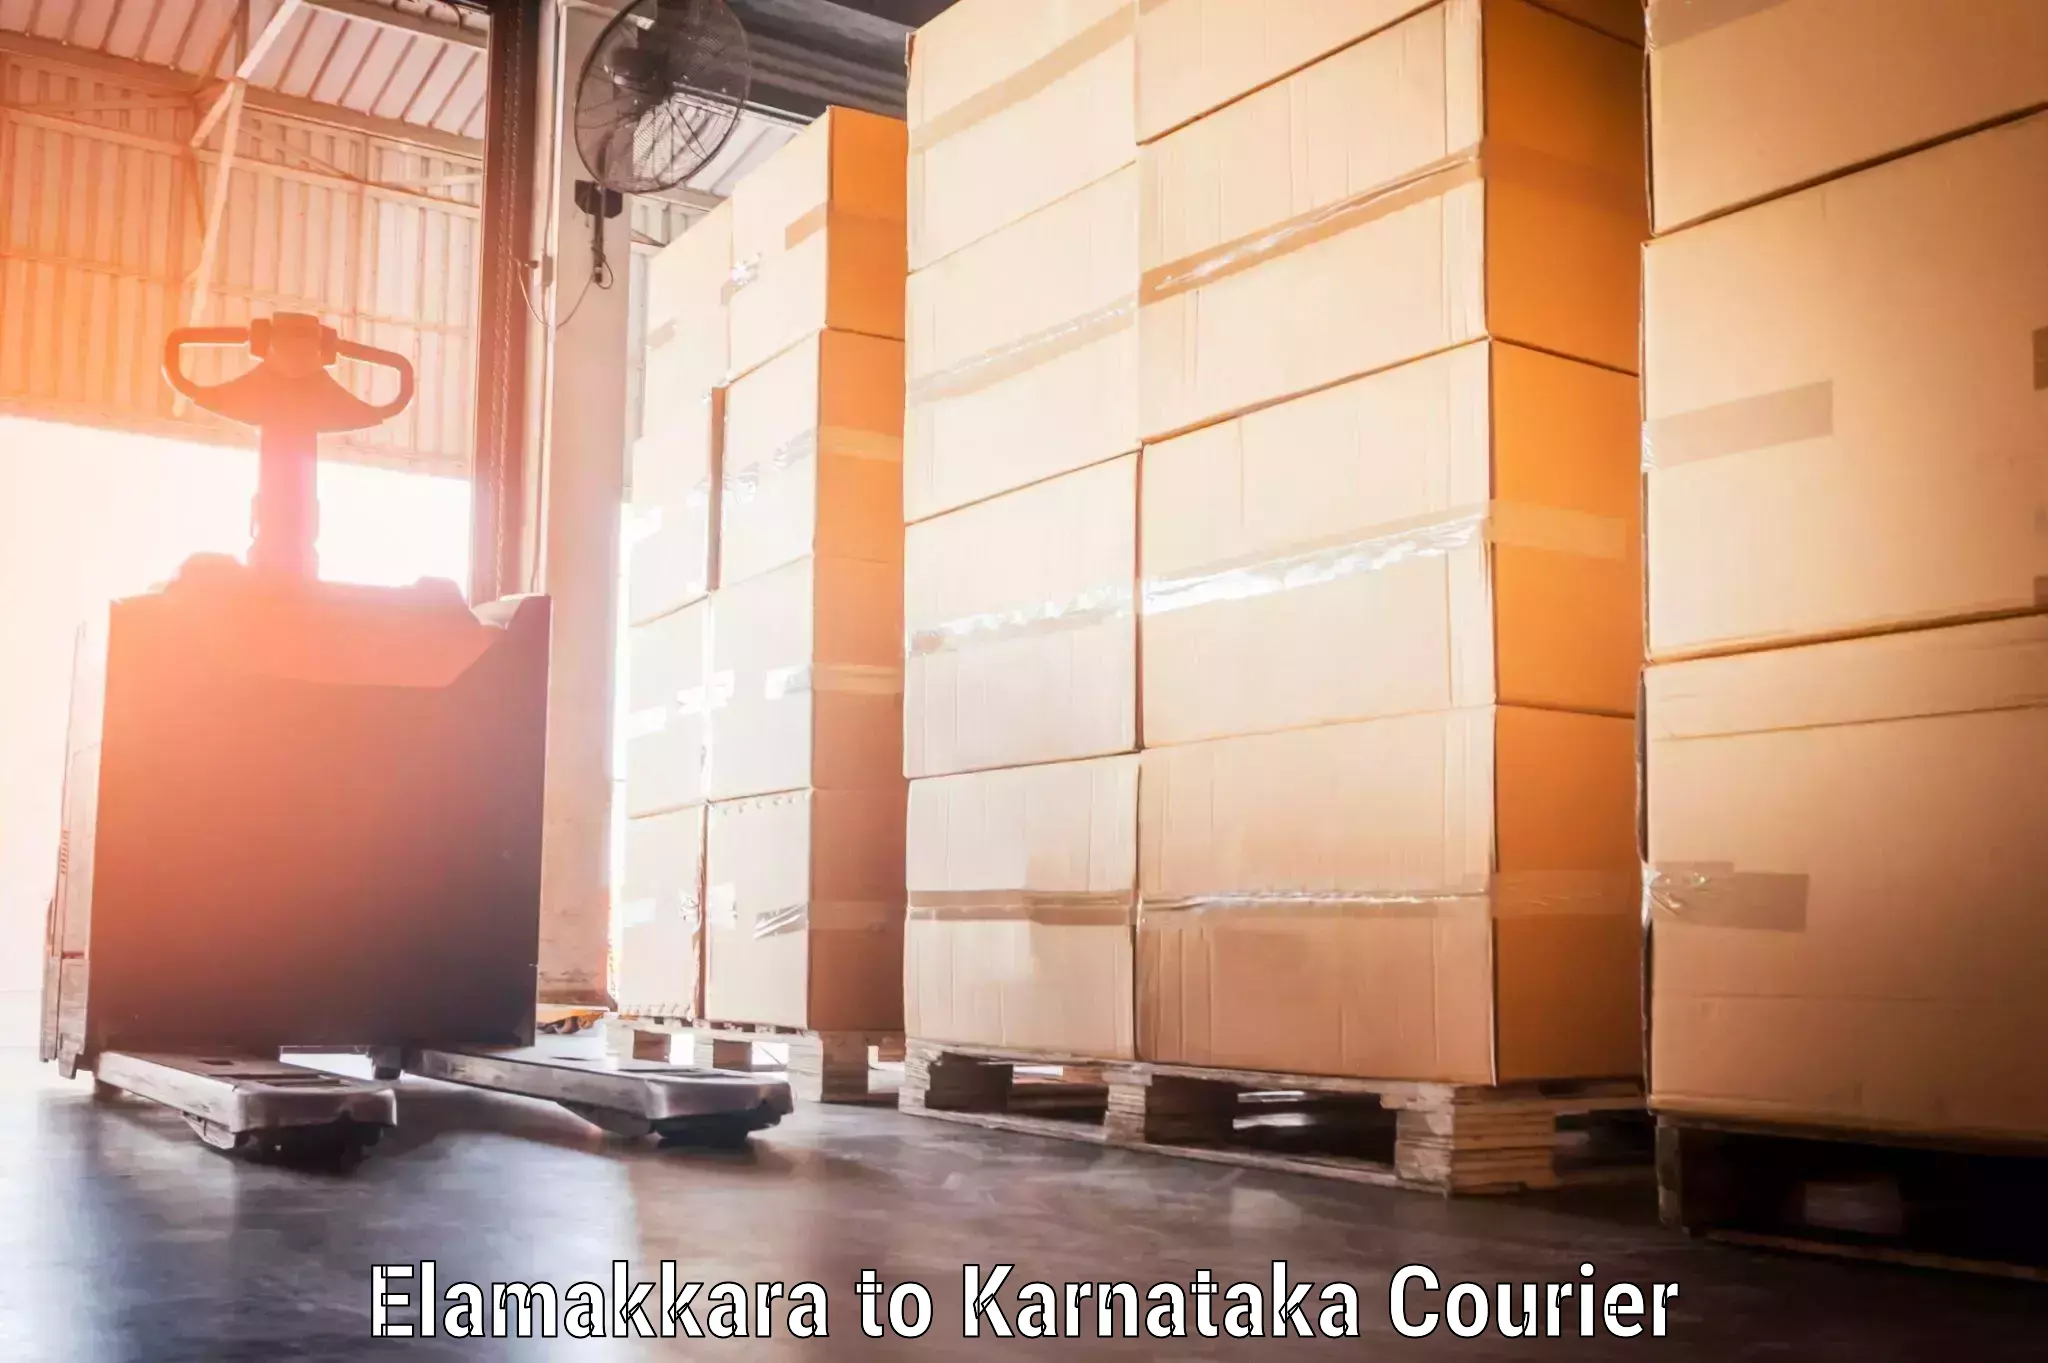 Personal baggage courier Elamakkara to Kanjarakatte